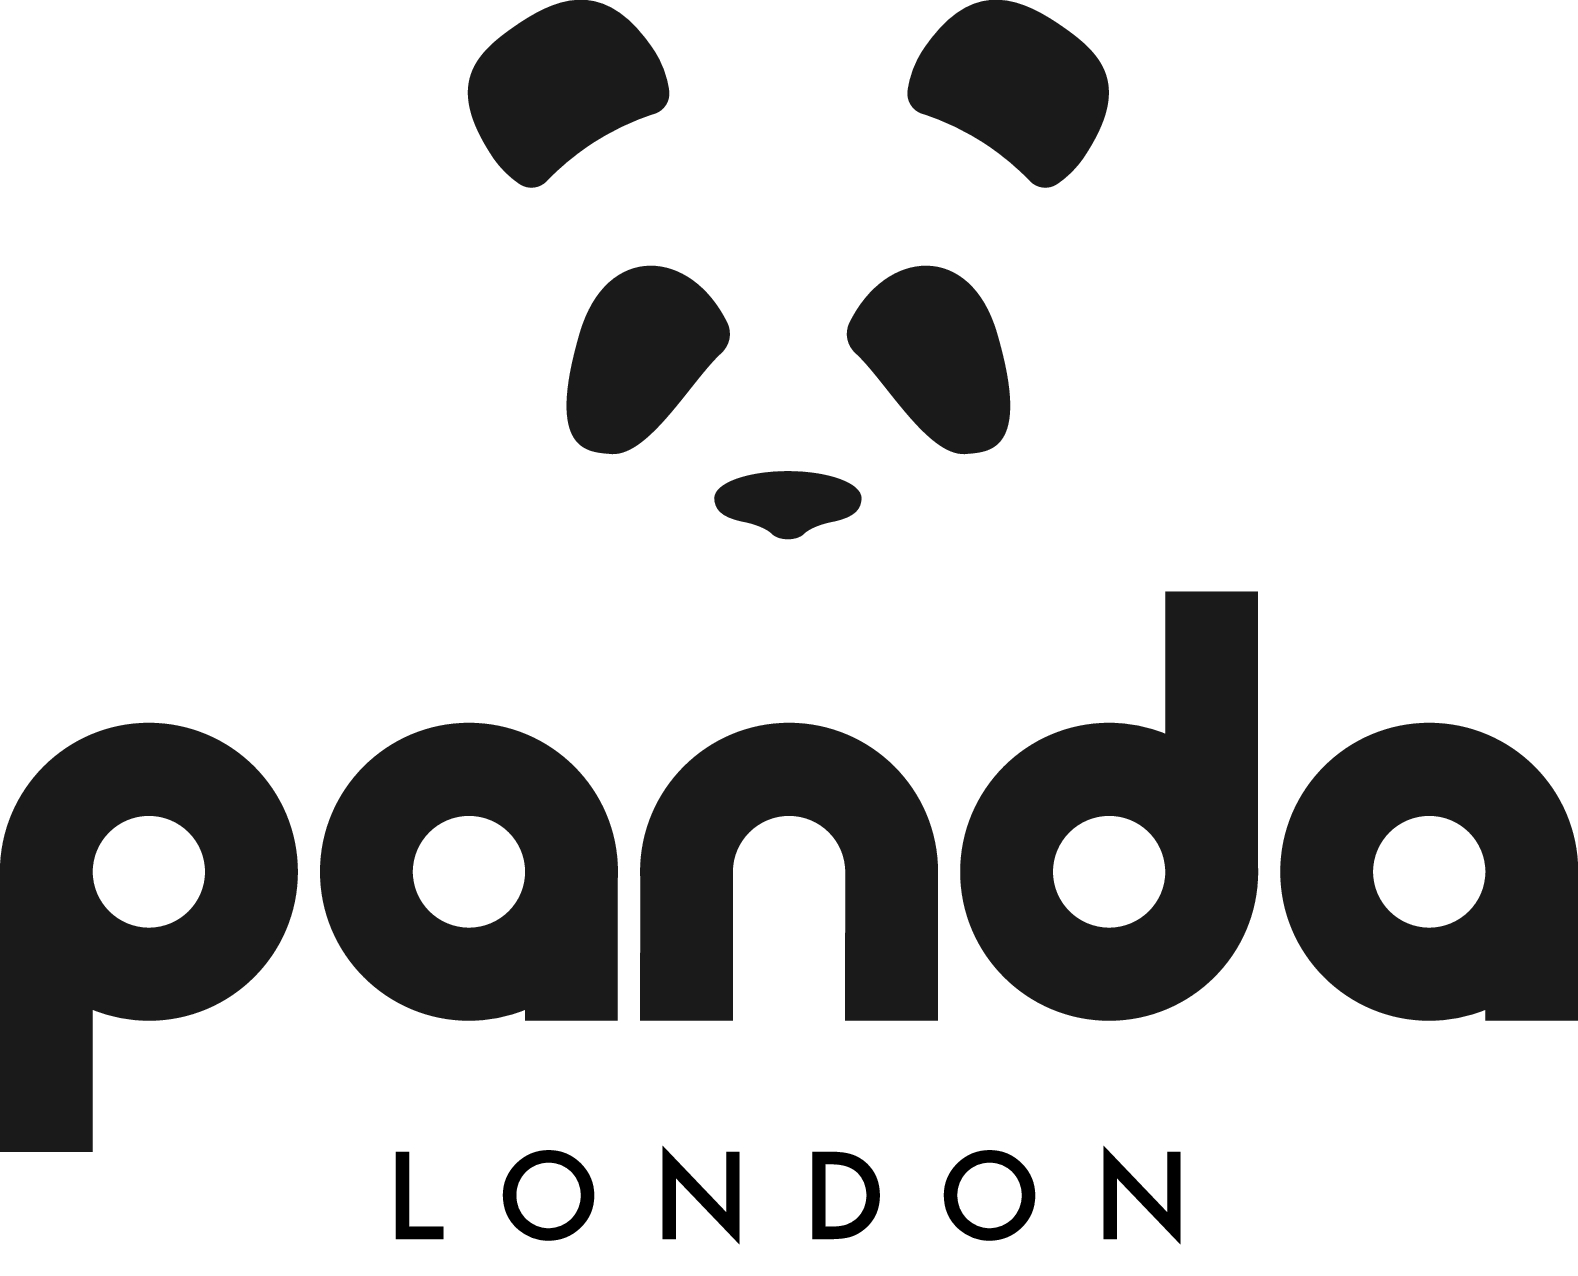 Panda London 優惠券 